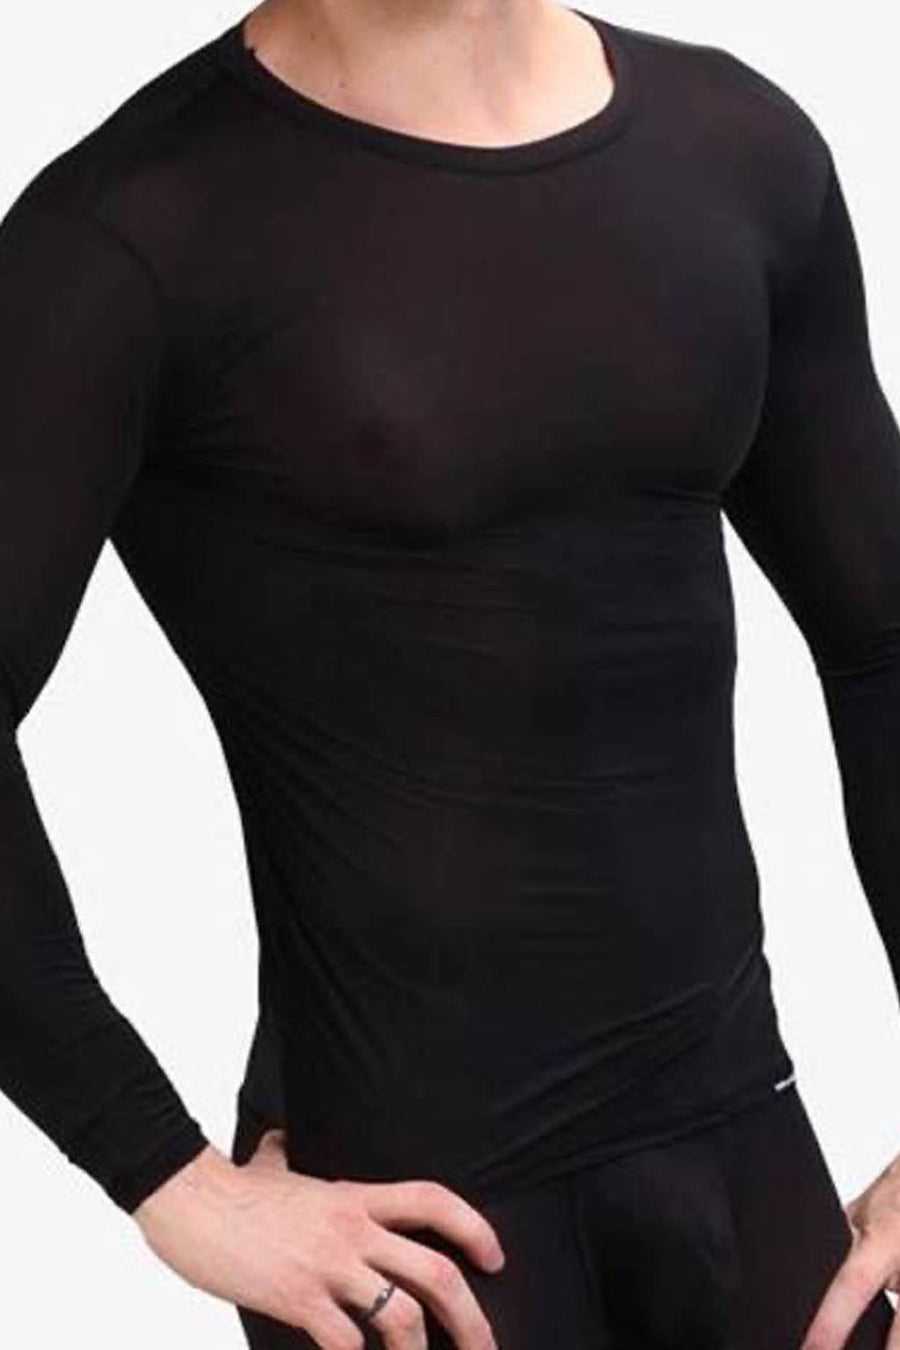 Manview Mens Sheer Long Sleeve Top Thermal Underwear – Bodywear for Men